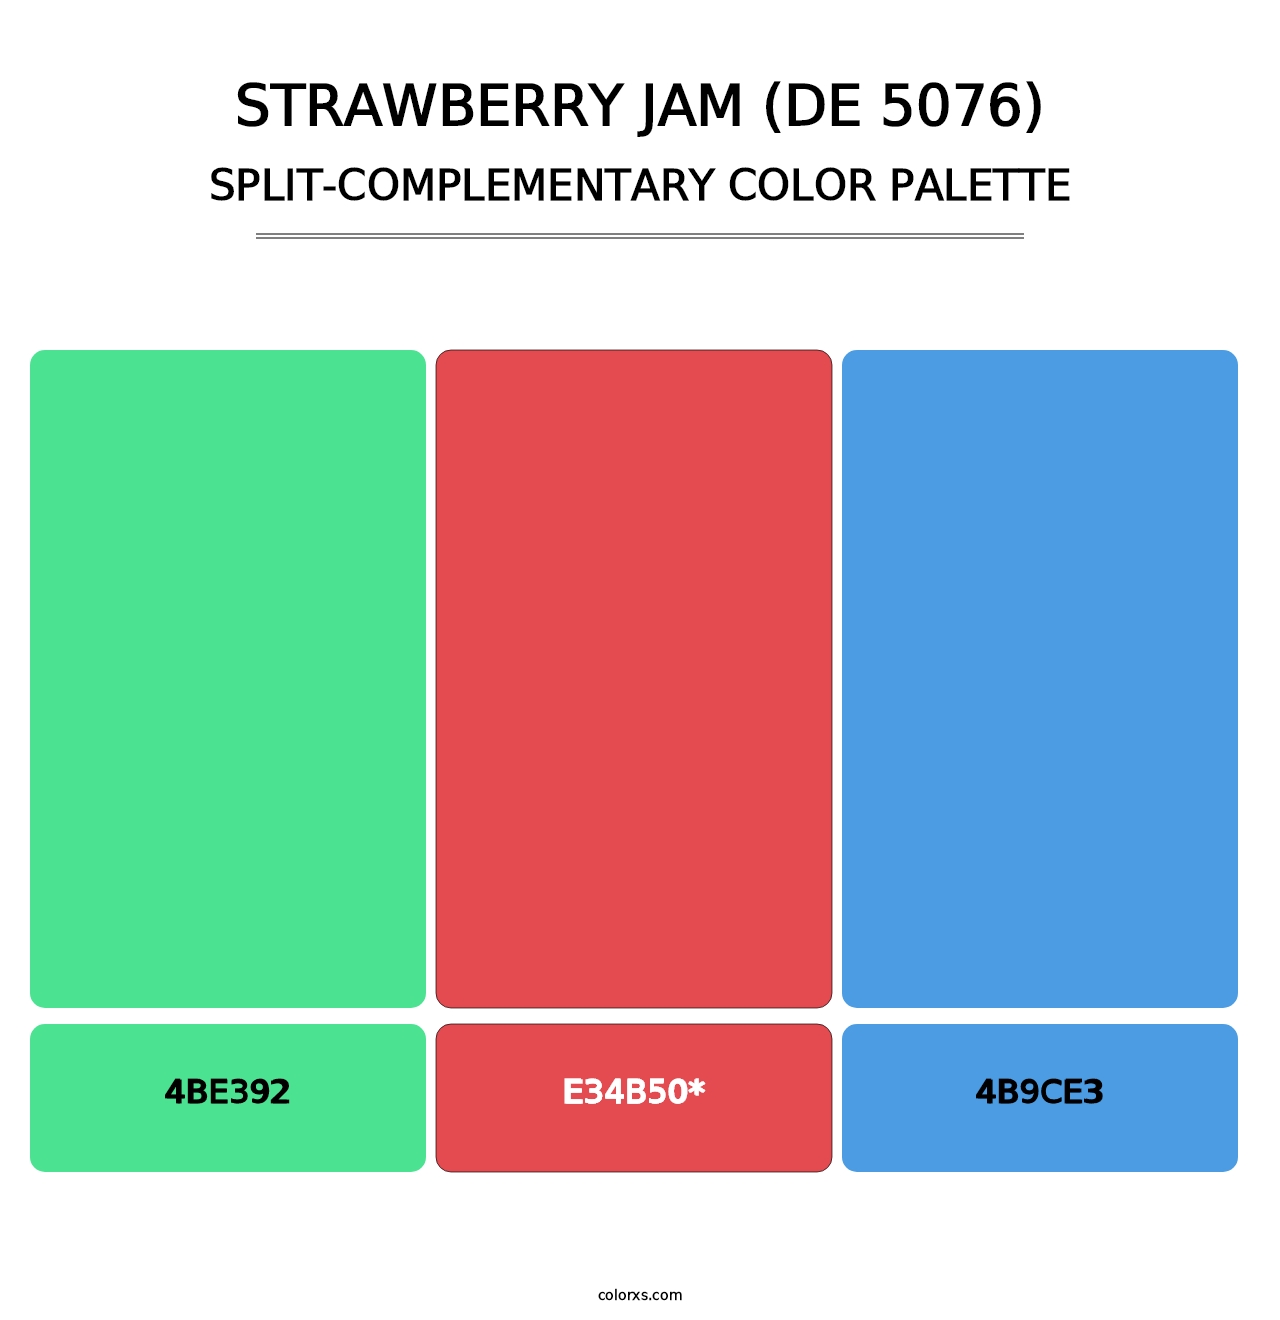 Strawberry Jam (DE 5076) - Split-Complementary Color Palette